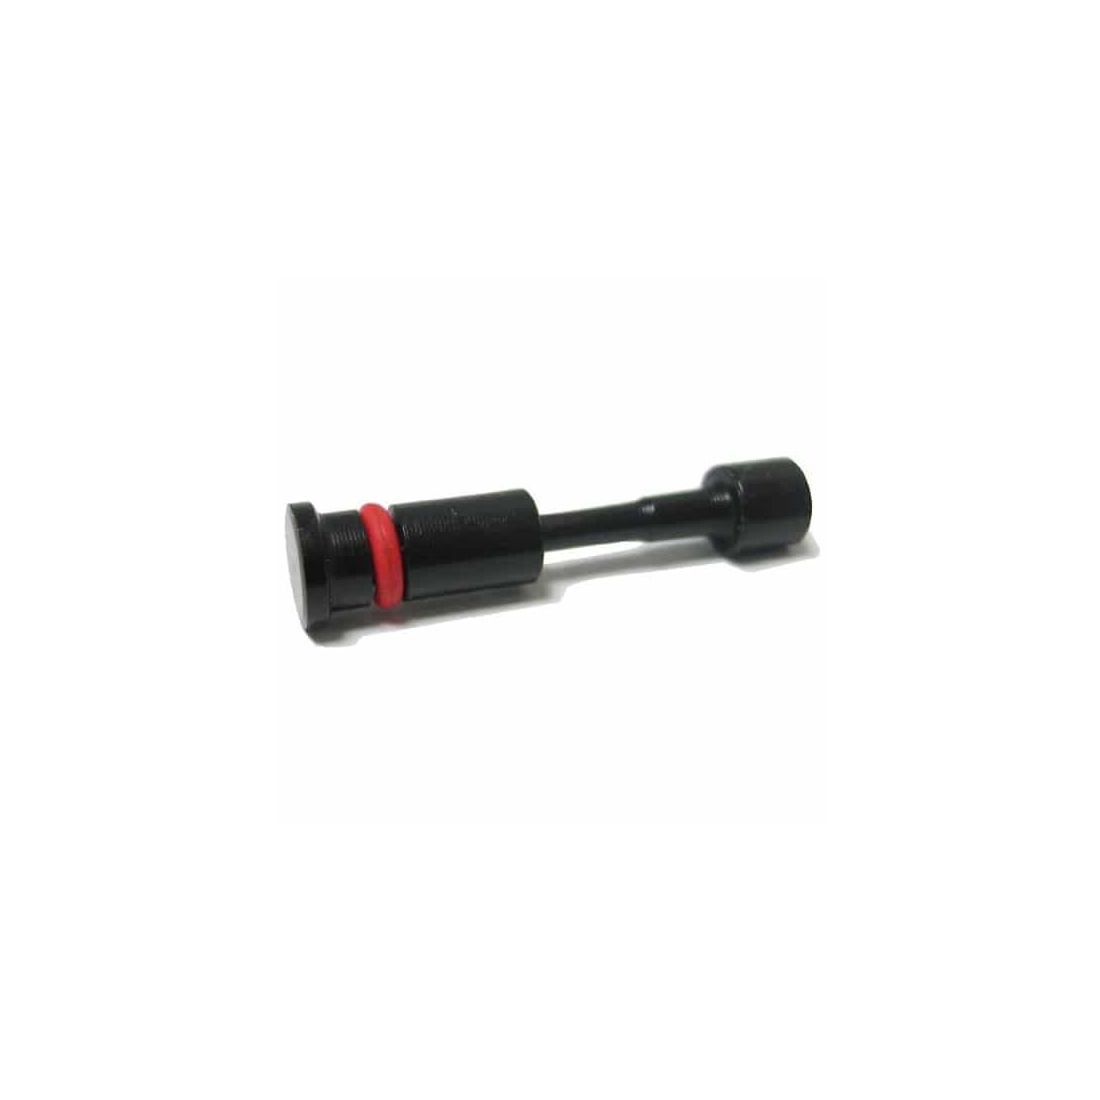 Tippmann A5 Safety Pin (02-37)